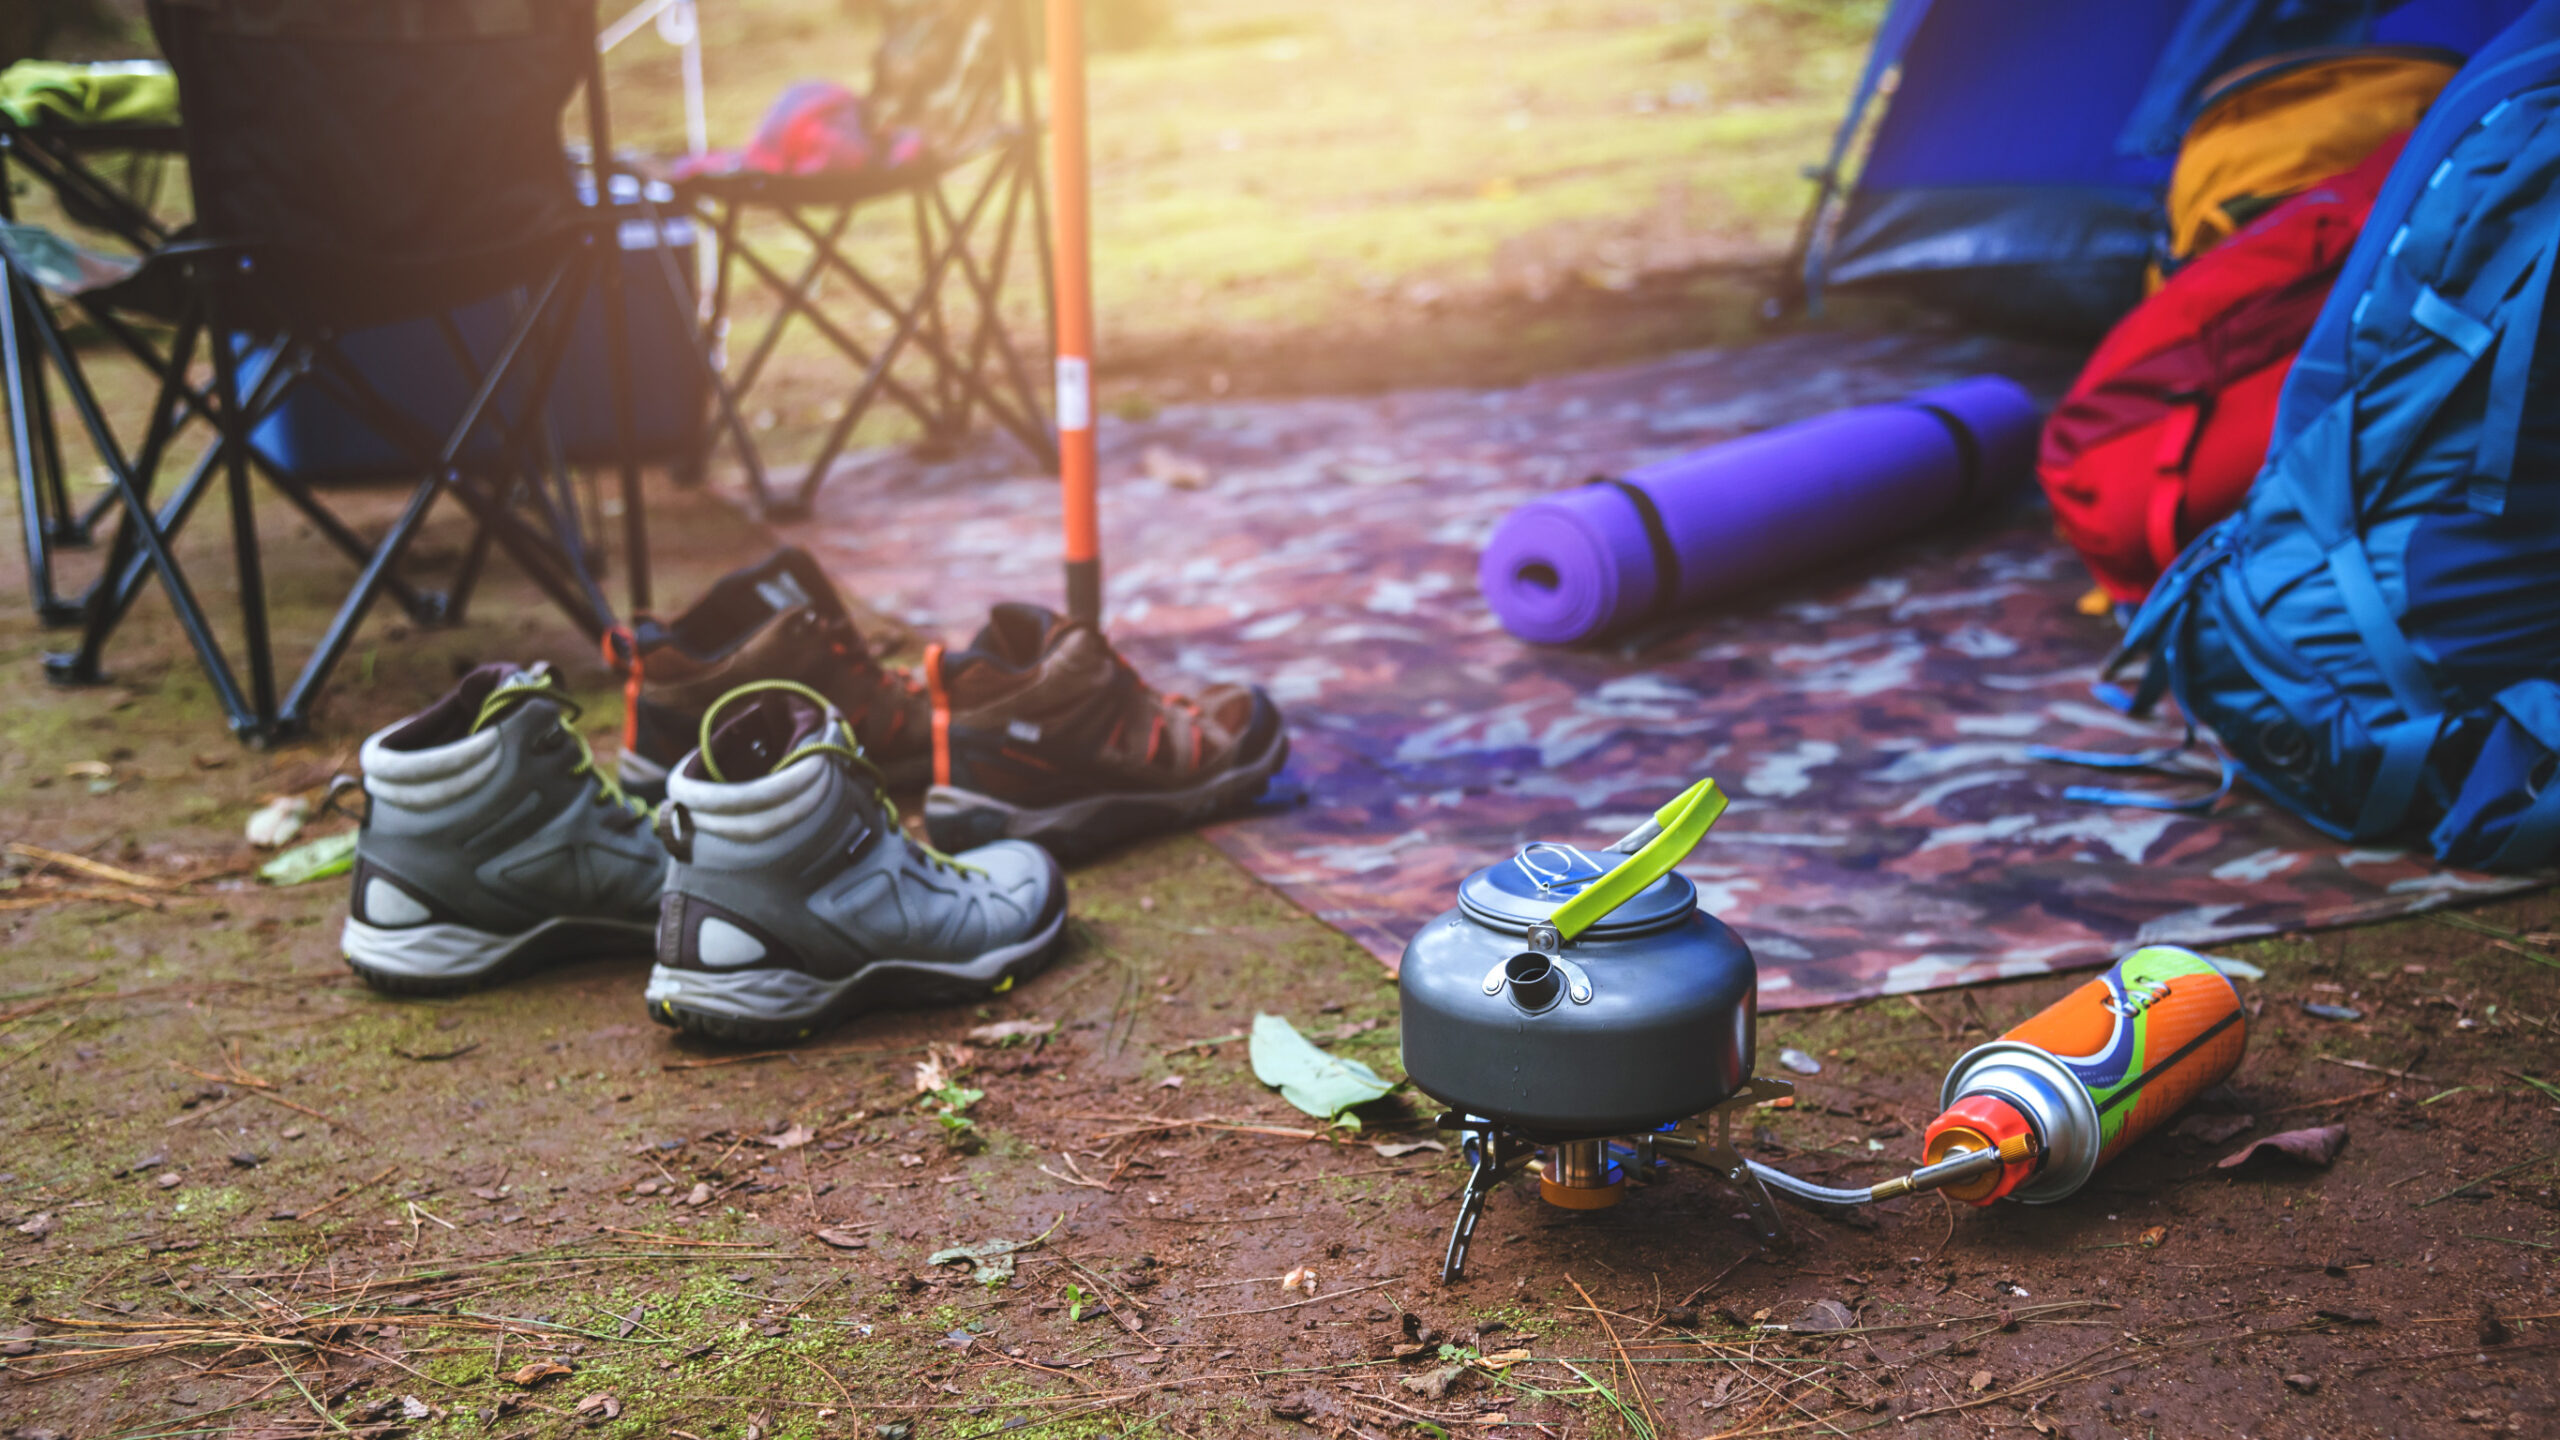 Skechers Hiking Boots: Comfort Meets the Wild - Outdoor Saga